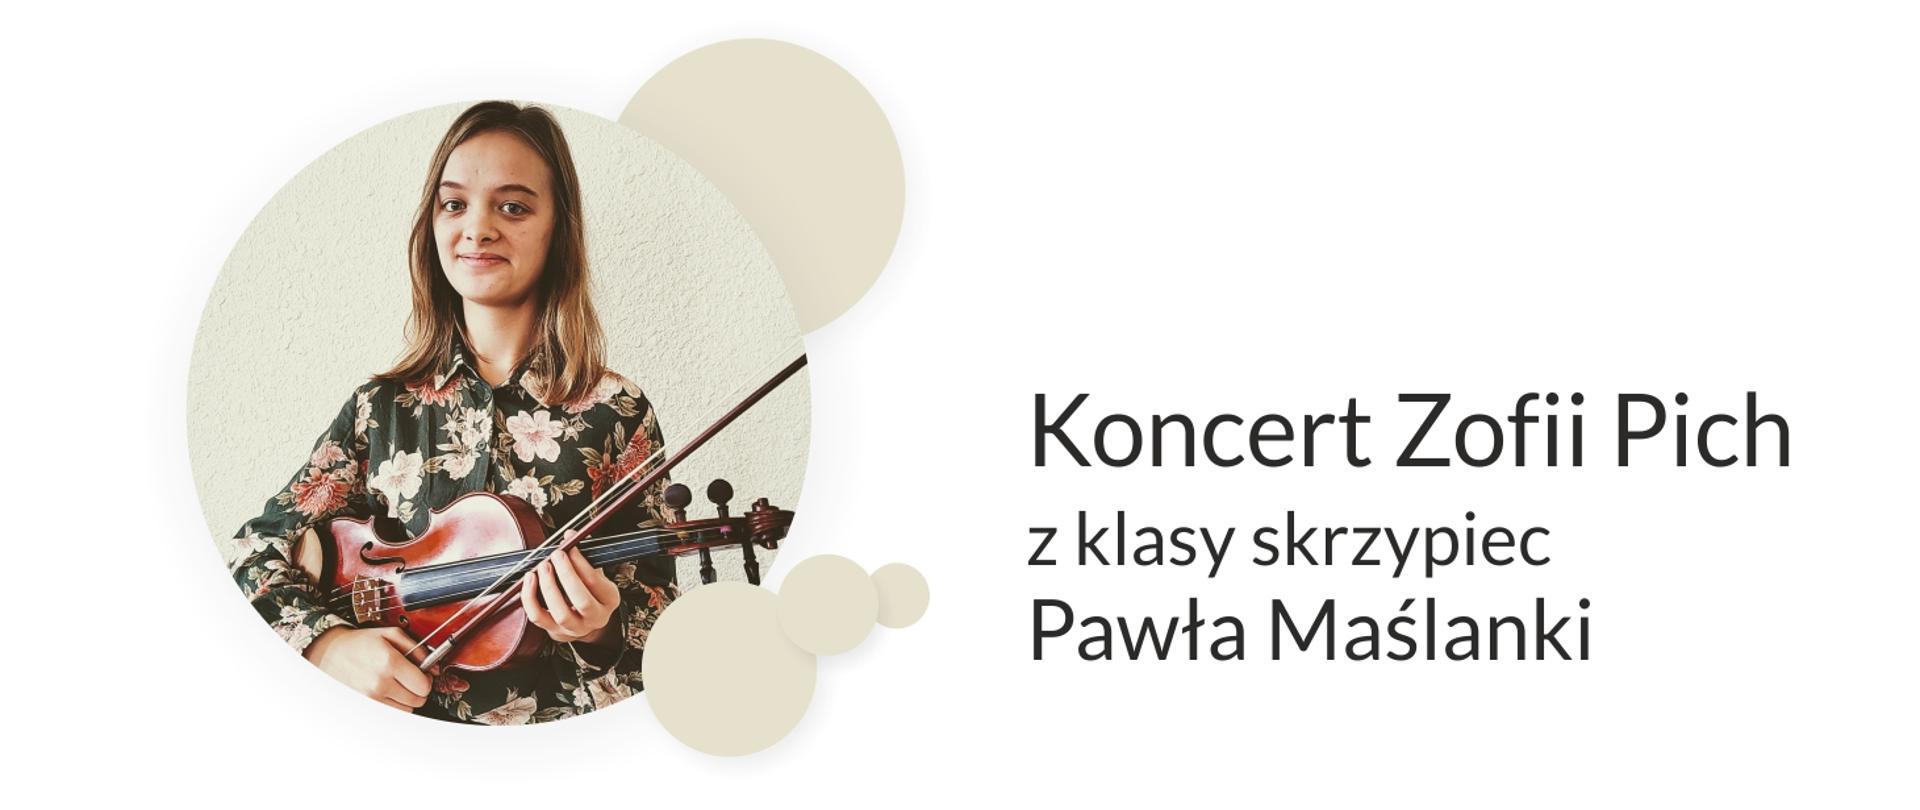 Grafika przedstawia zdjęcie Zofii Pich oraz prezentuje napis Koncert Zofii Pich z klasy skrzypiec Pawła Maślanki